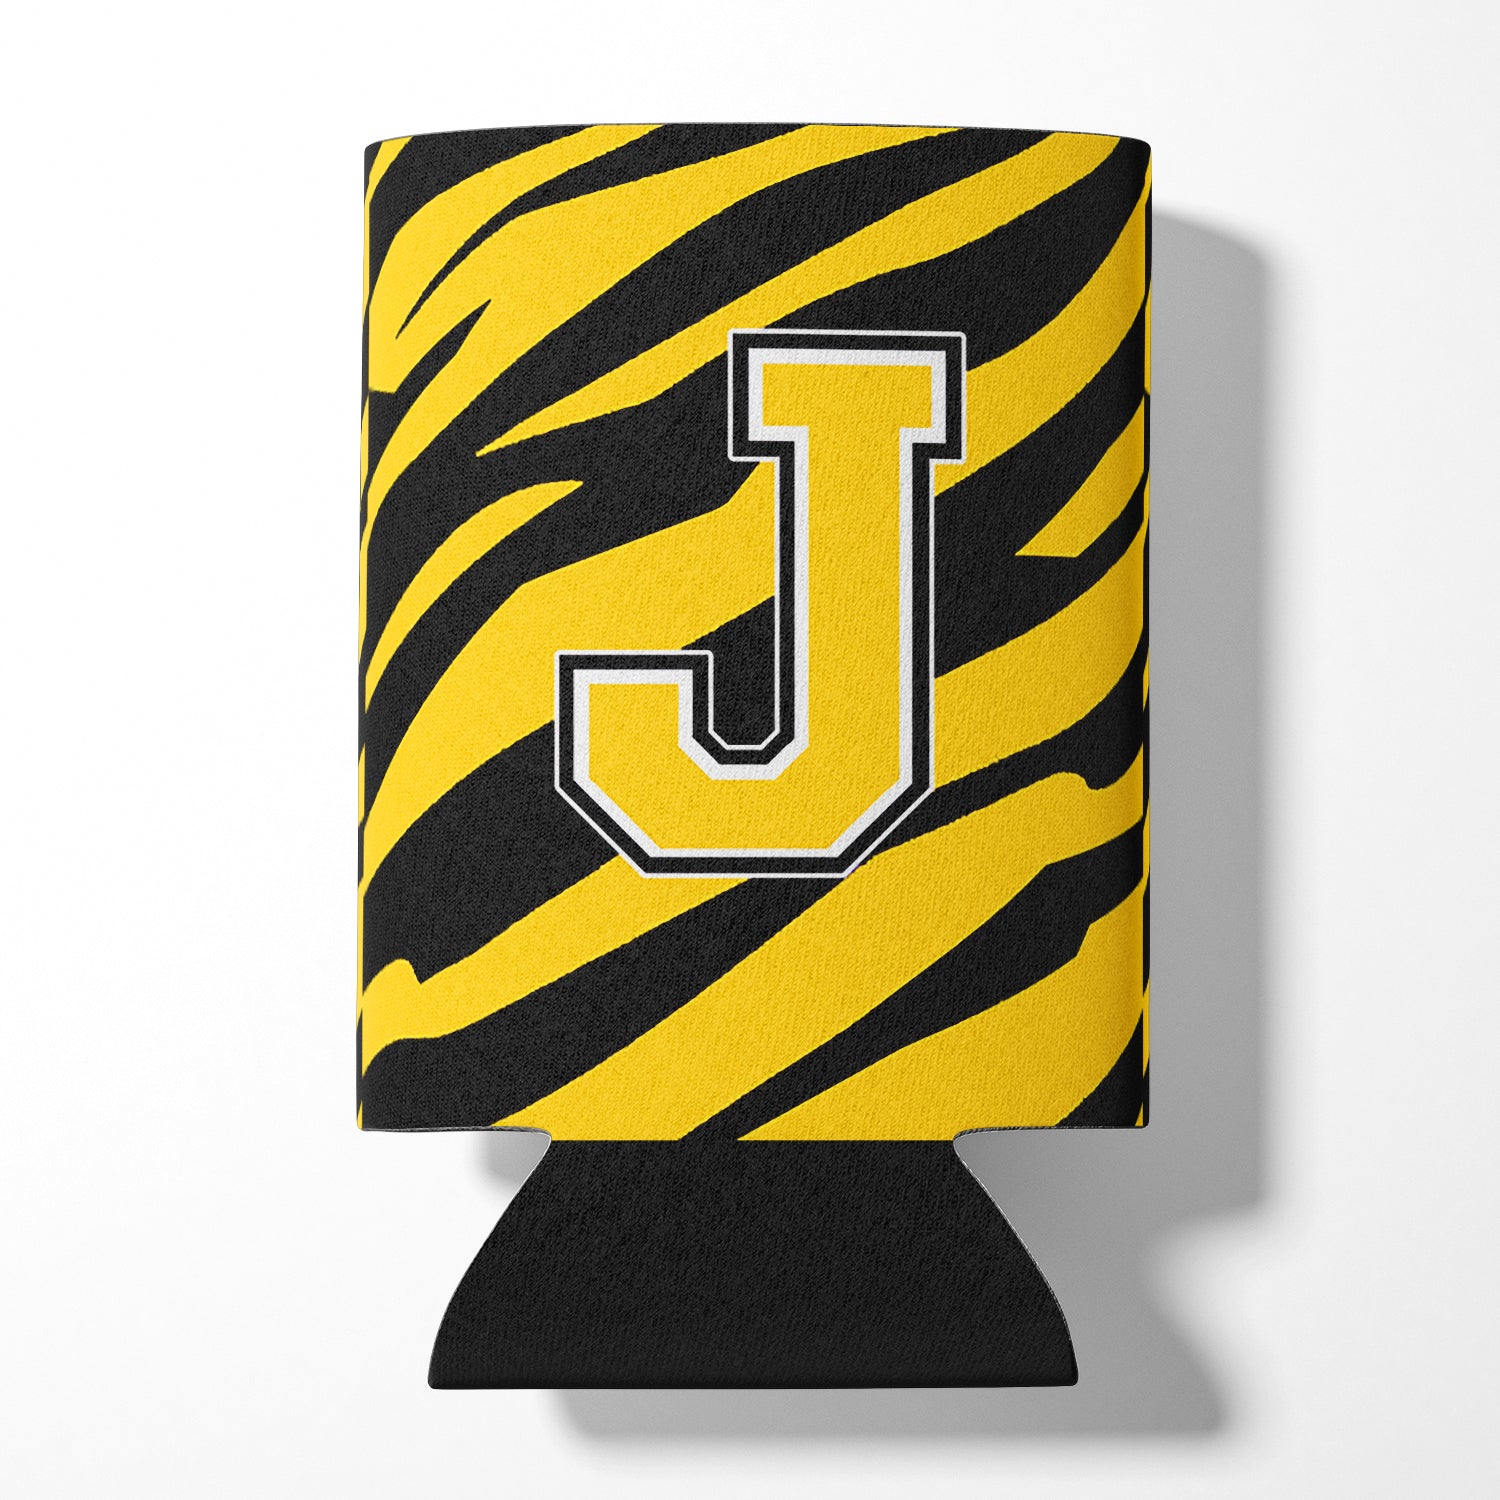 Letter J Initial Monogram - Tiger Stripe - Black Gold Can Beverage Insulator Hugger.